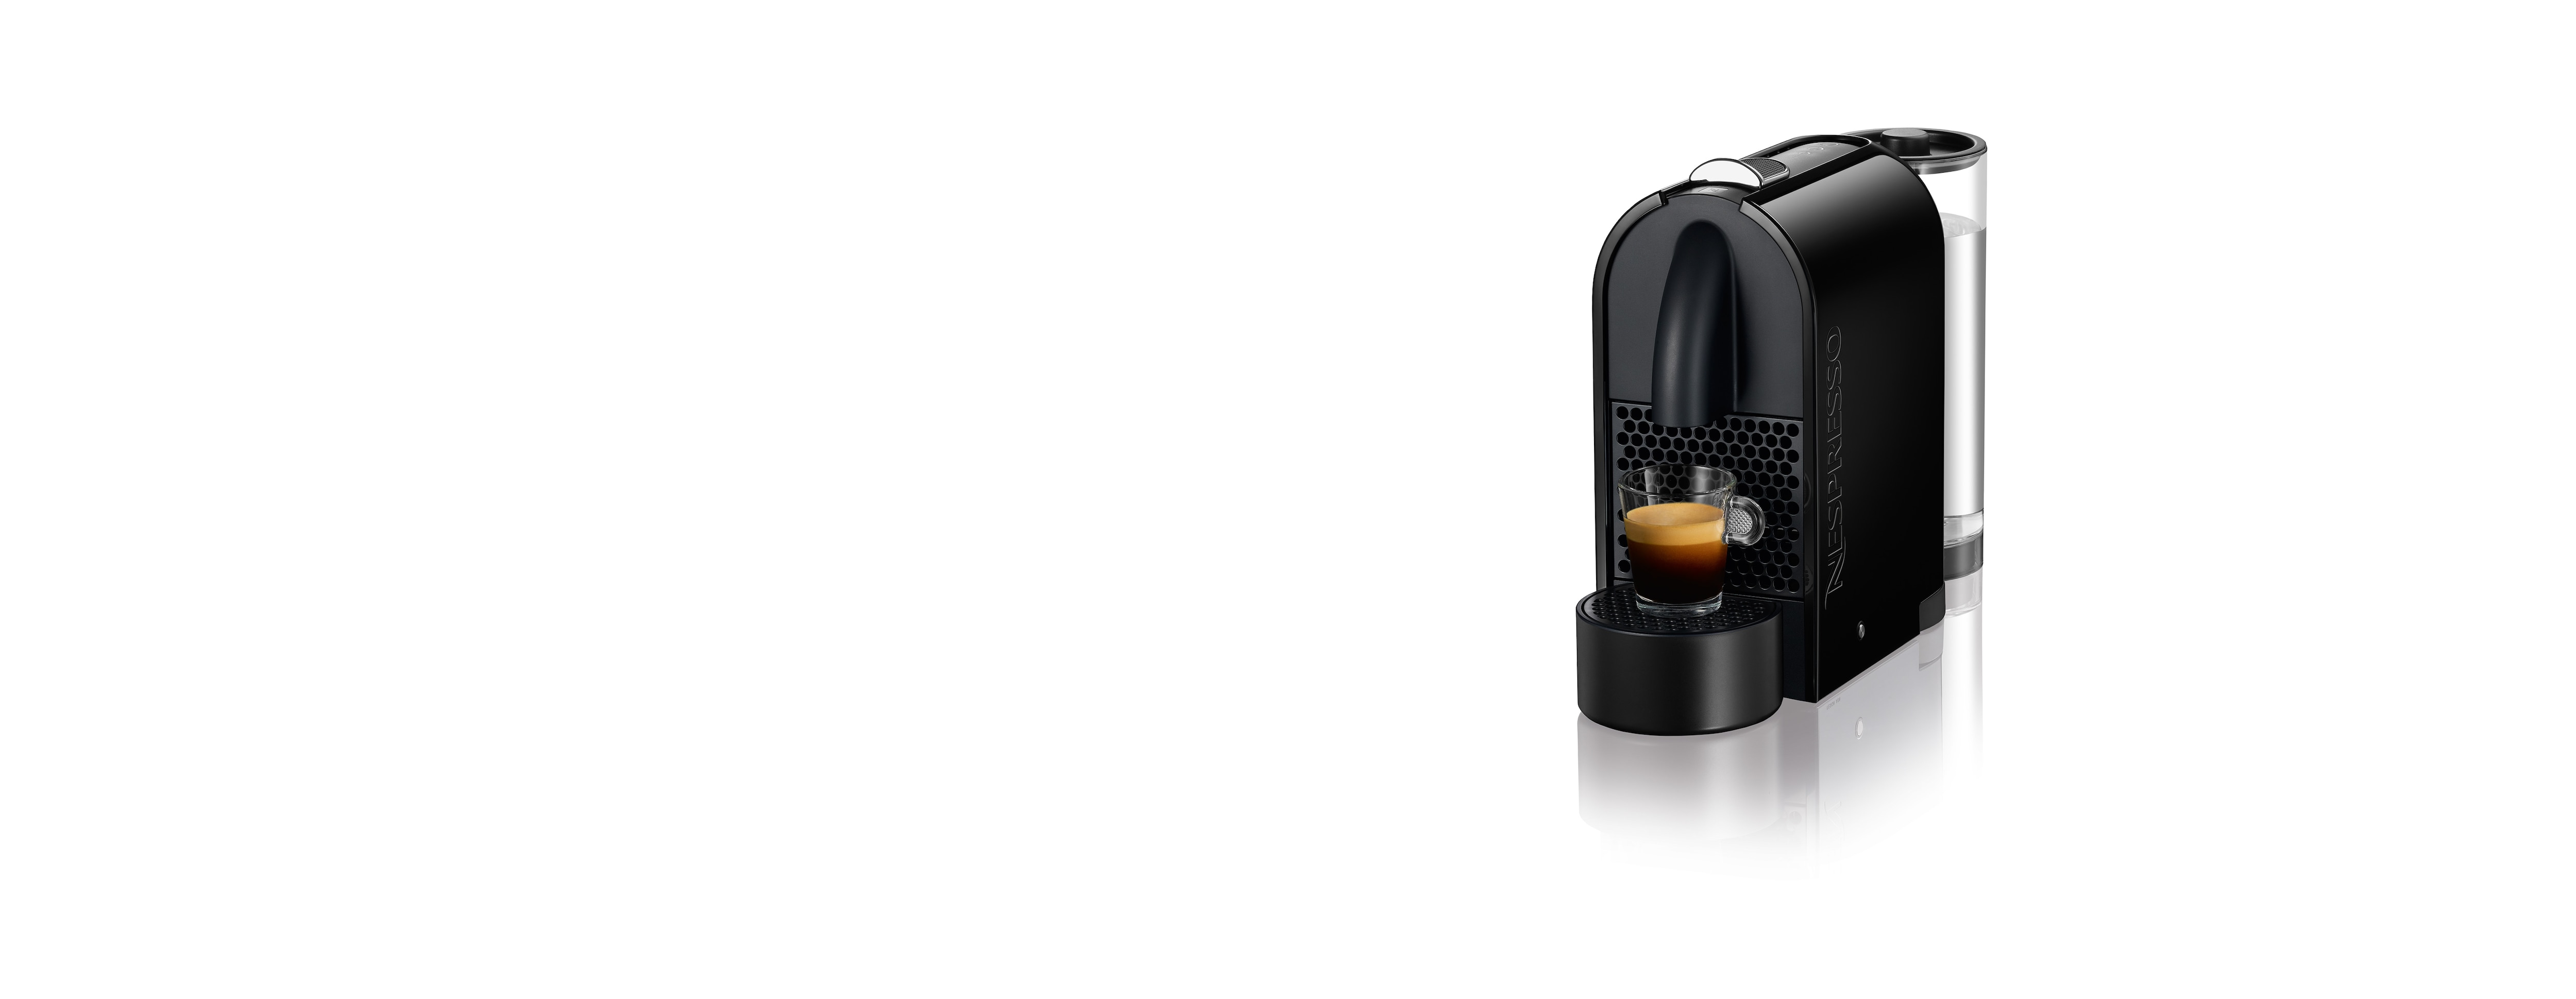 Máquina de Café Manual PRINCESS 249413 Pó+Nespresso (20 bar - Café moído e  cápsulas) 